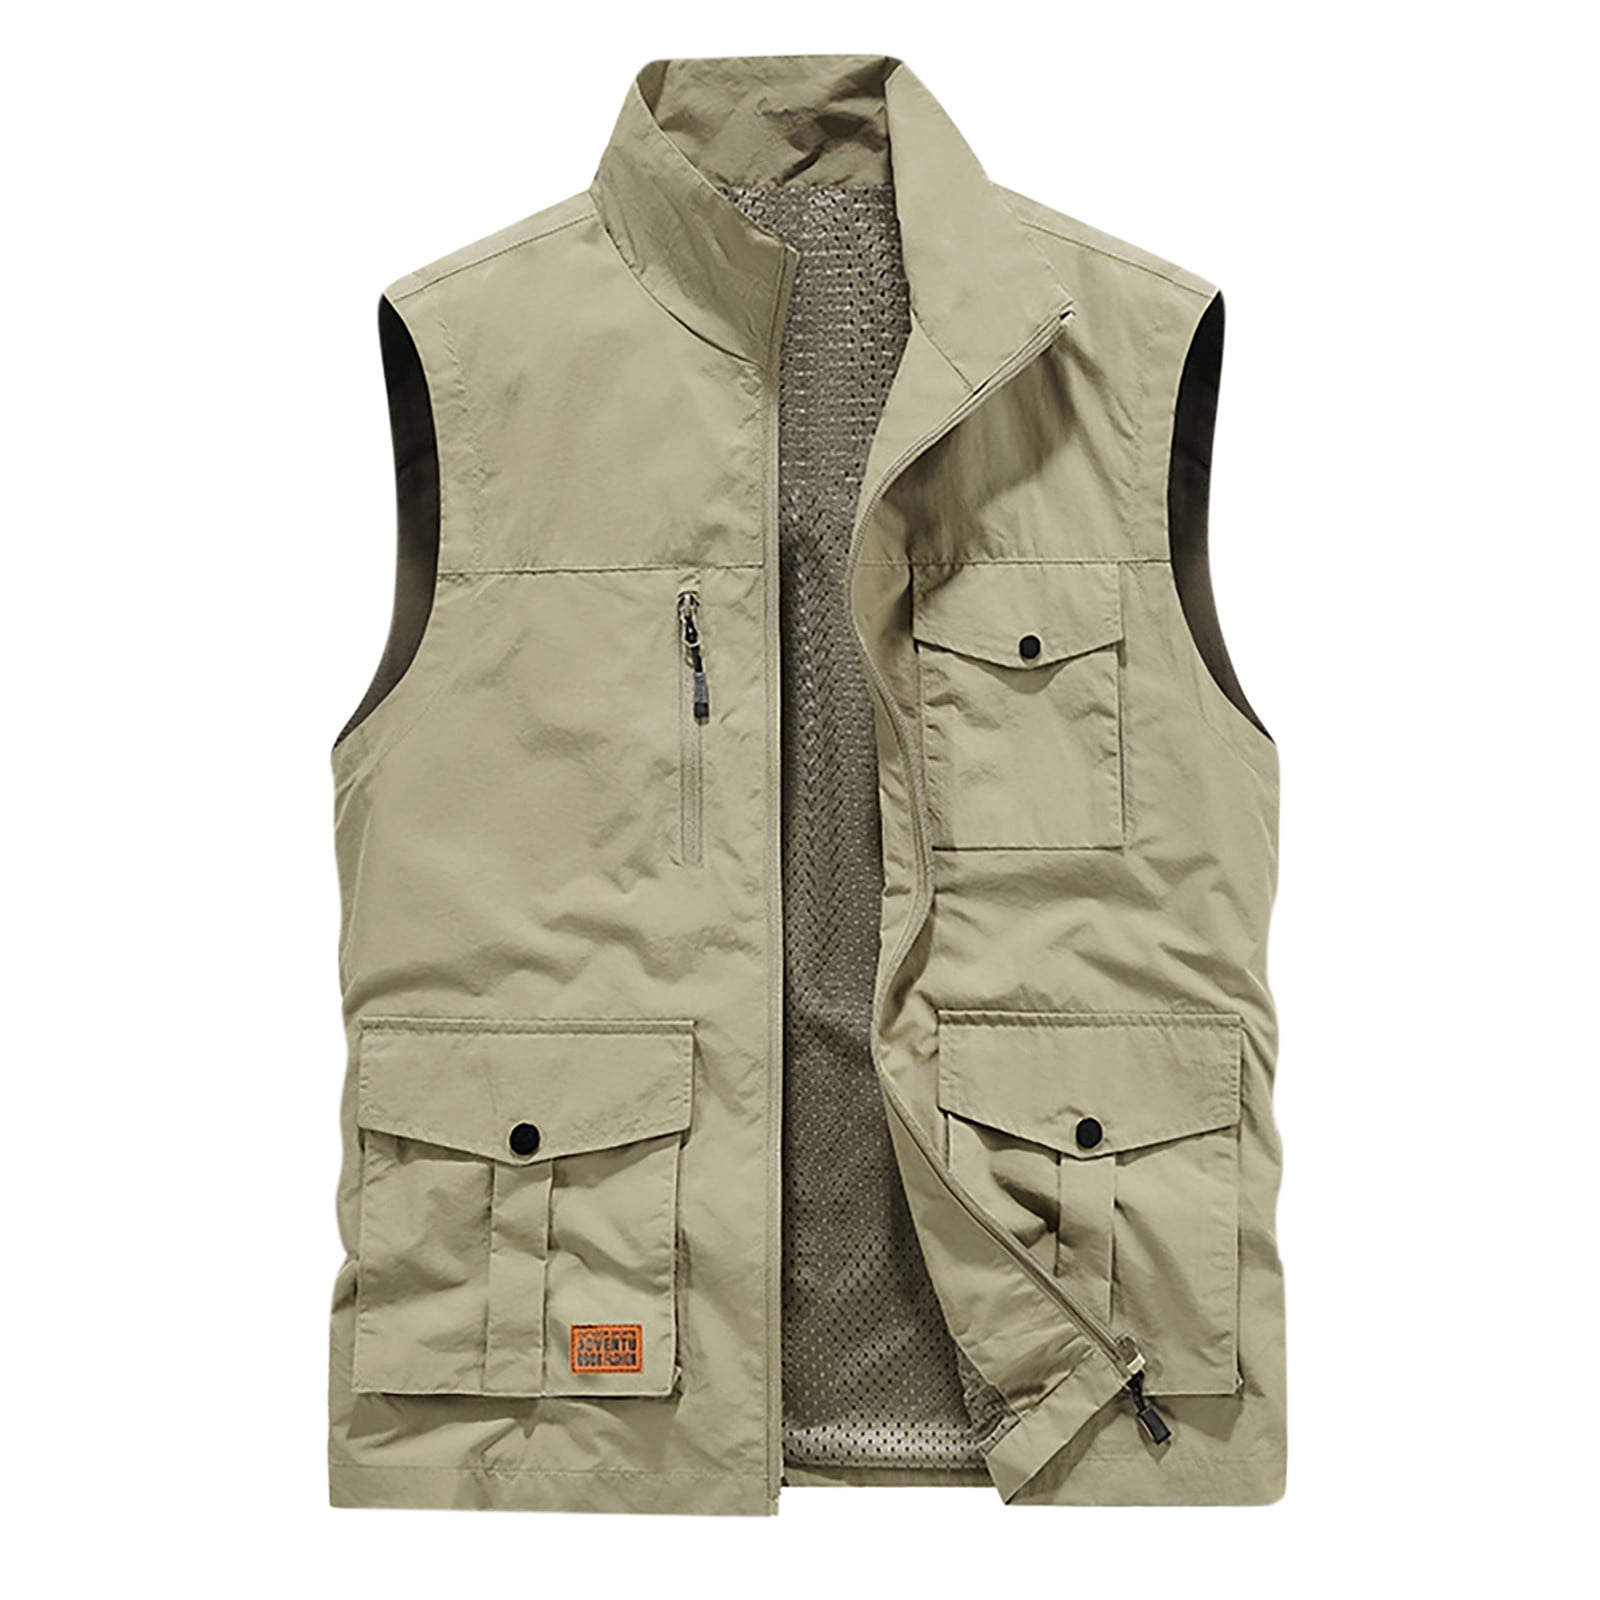 Men's Casual Outdoor Vest Zip-up Jacket Quick Dry Work Travel Cargo ...